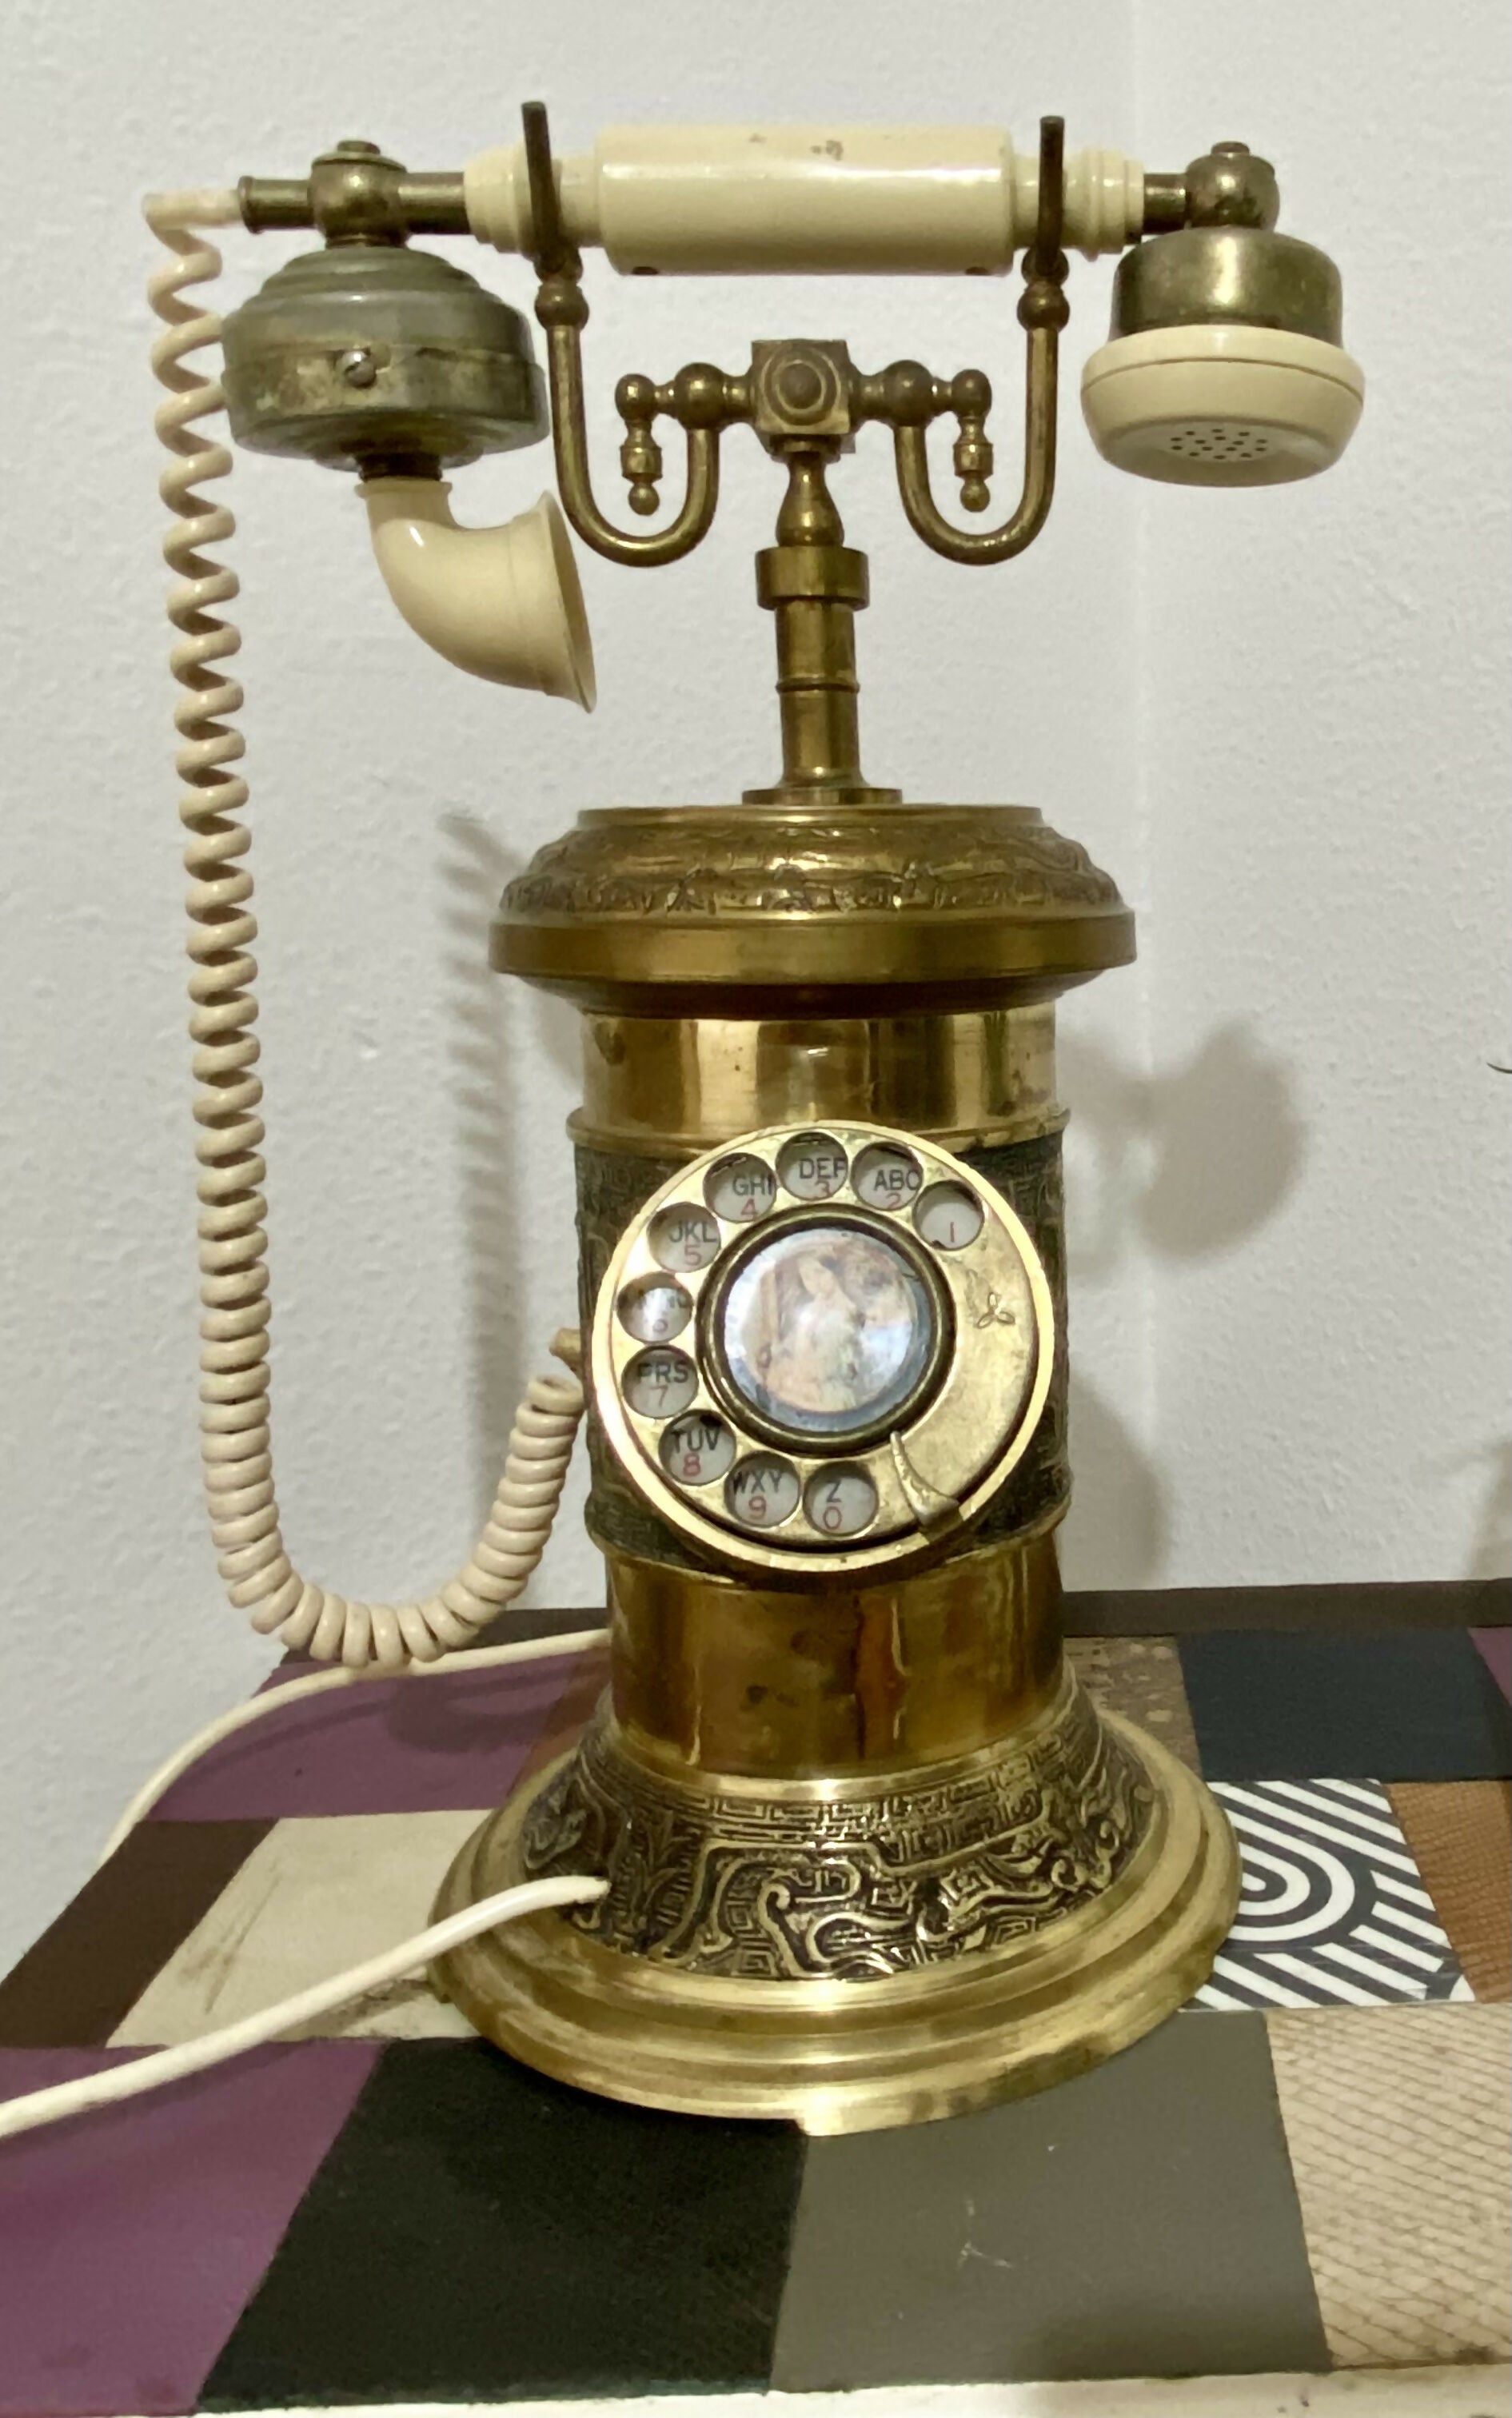 Telefone dourado antigo